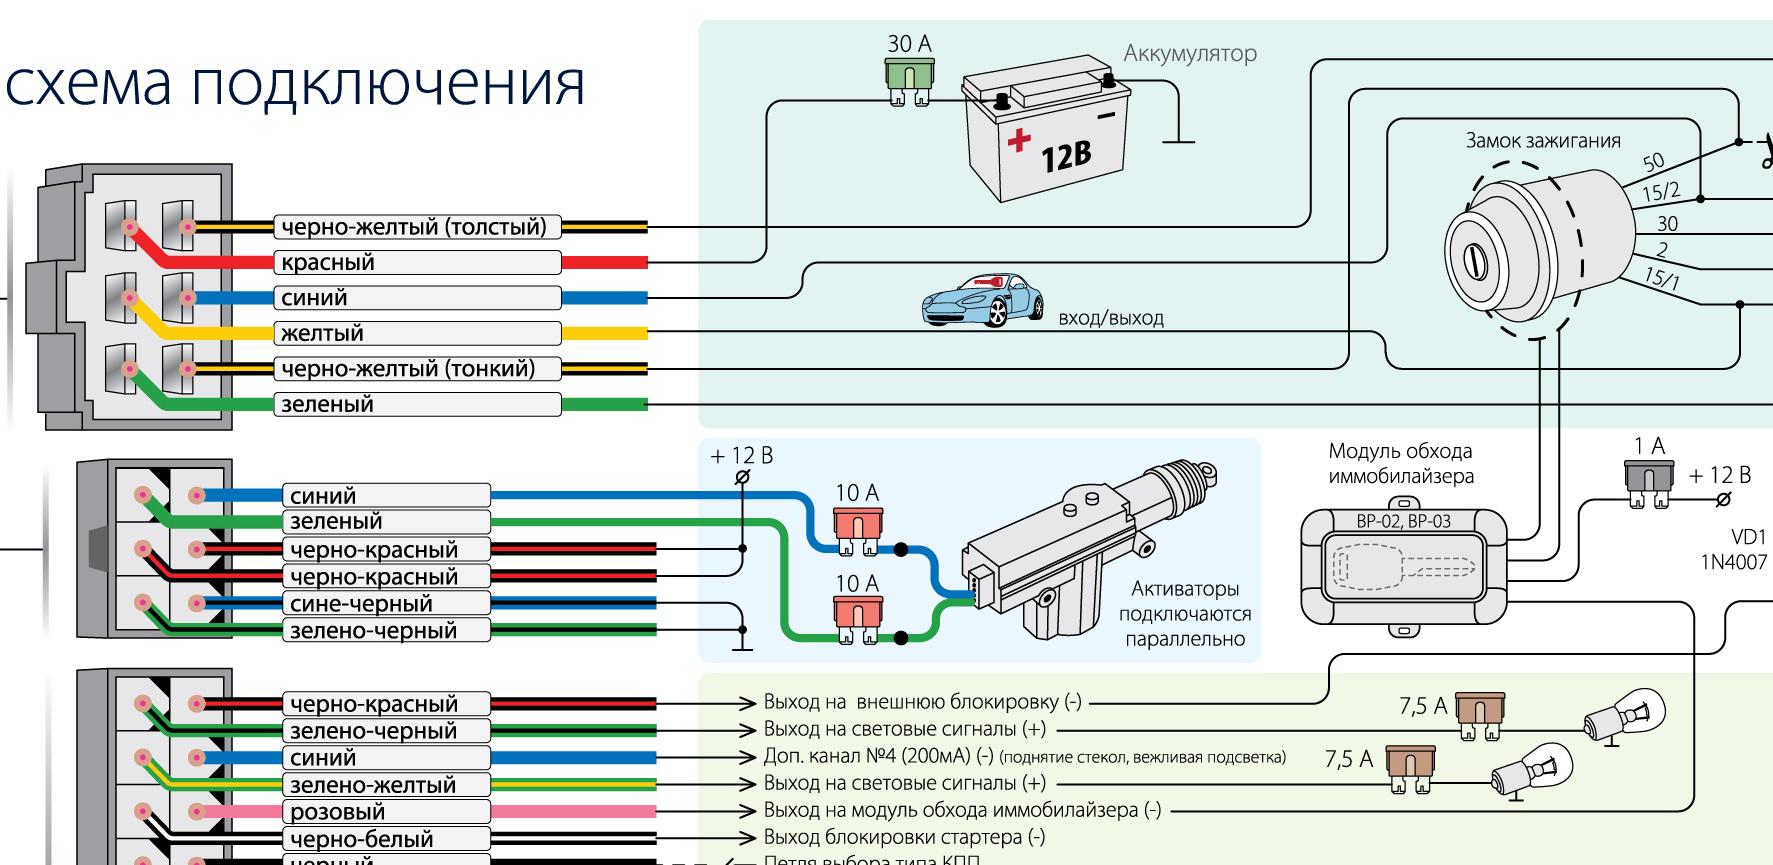 Проверка работы системы зажигания на УАЗ-469Б, ремонт приборов системы зажигания.